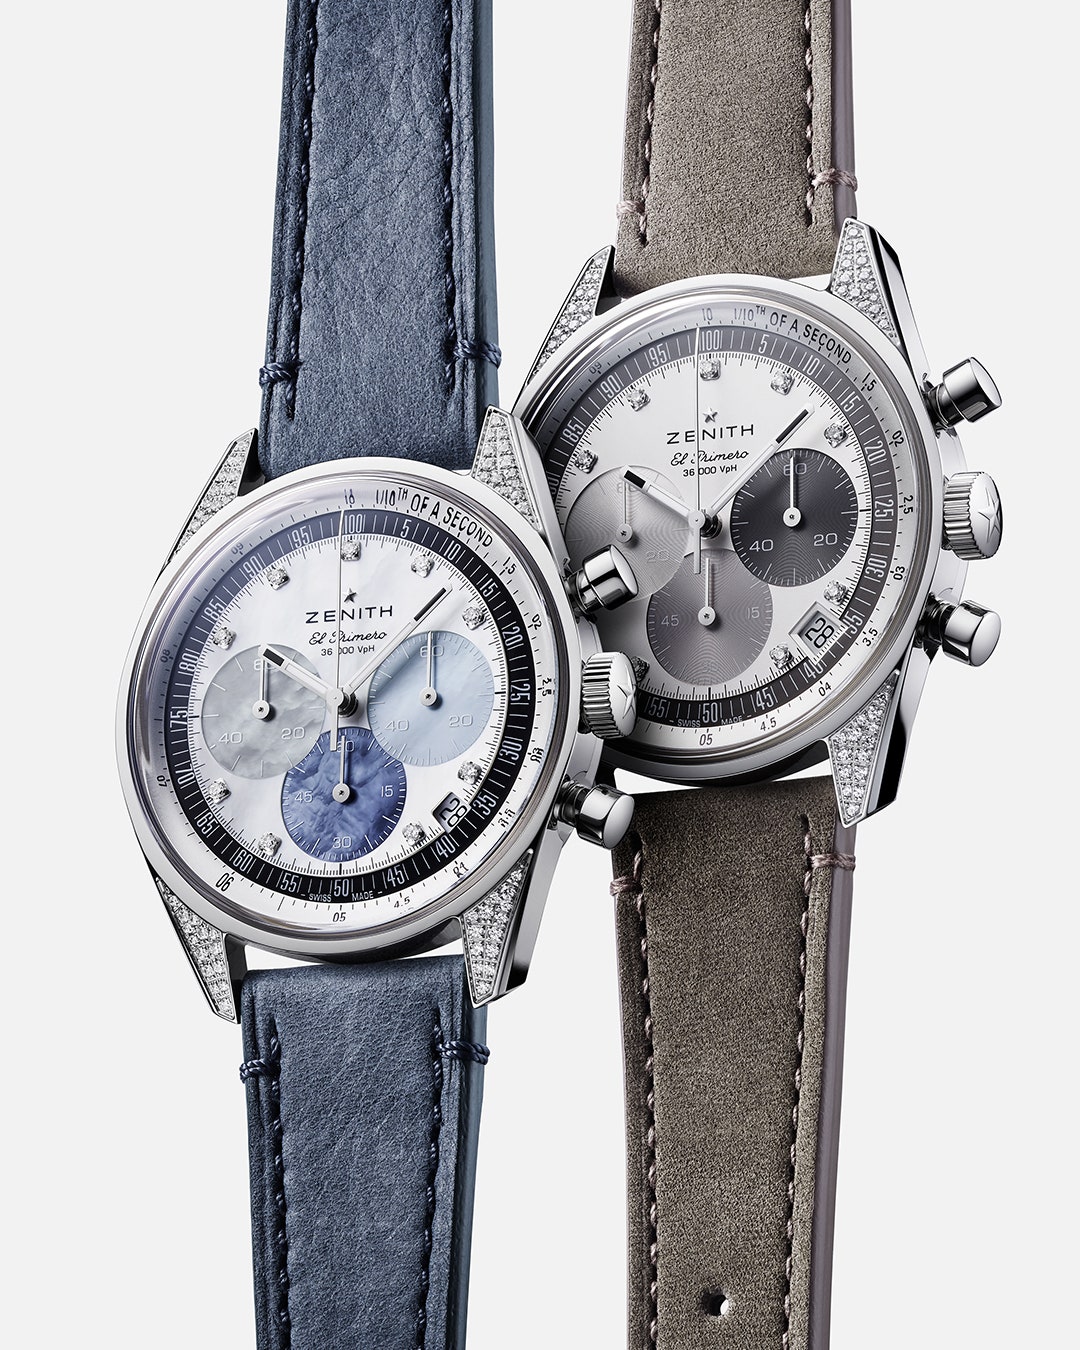 Модная находка дня новые модели часов Zenith Chronomaster Original с бриллиантами